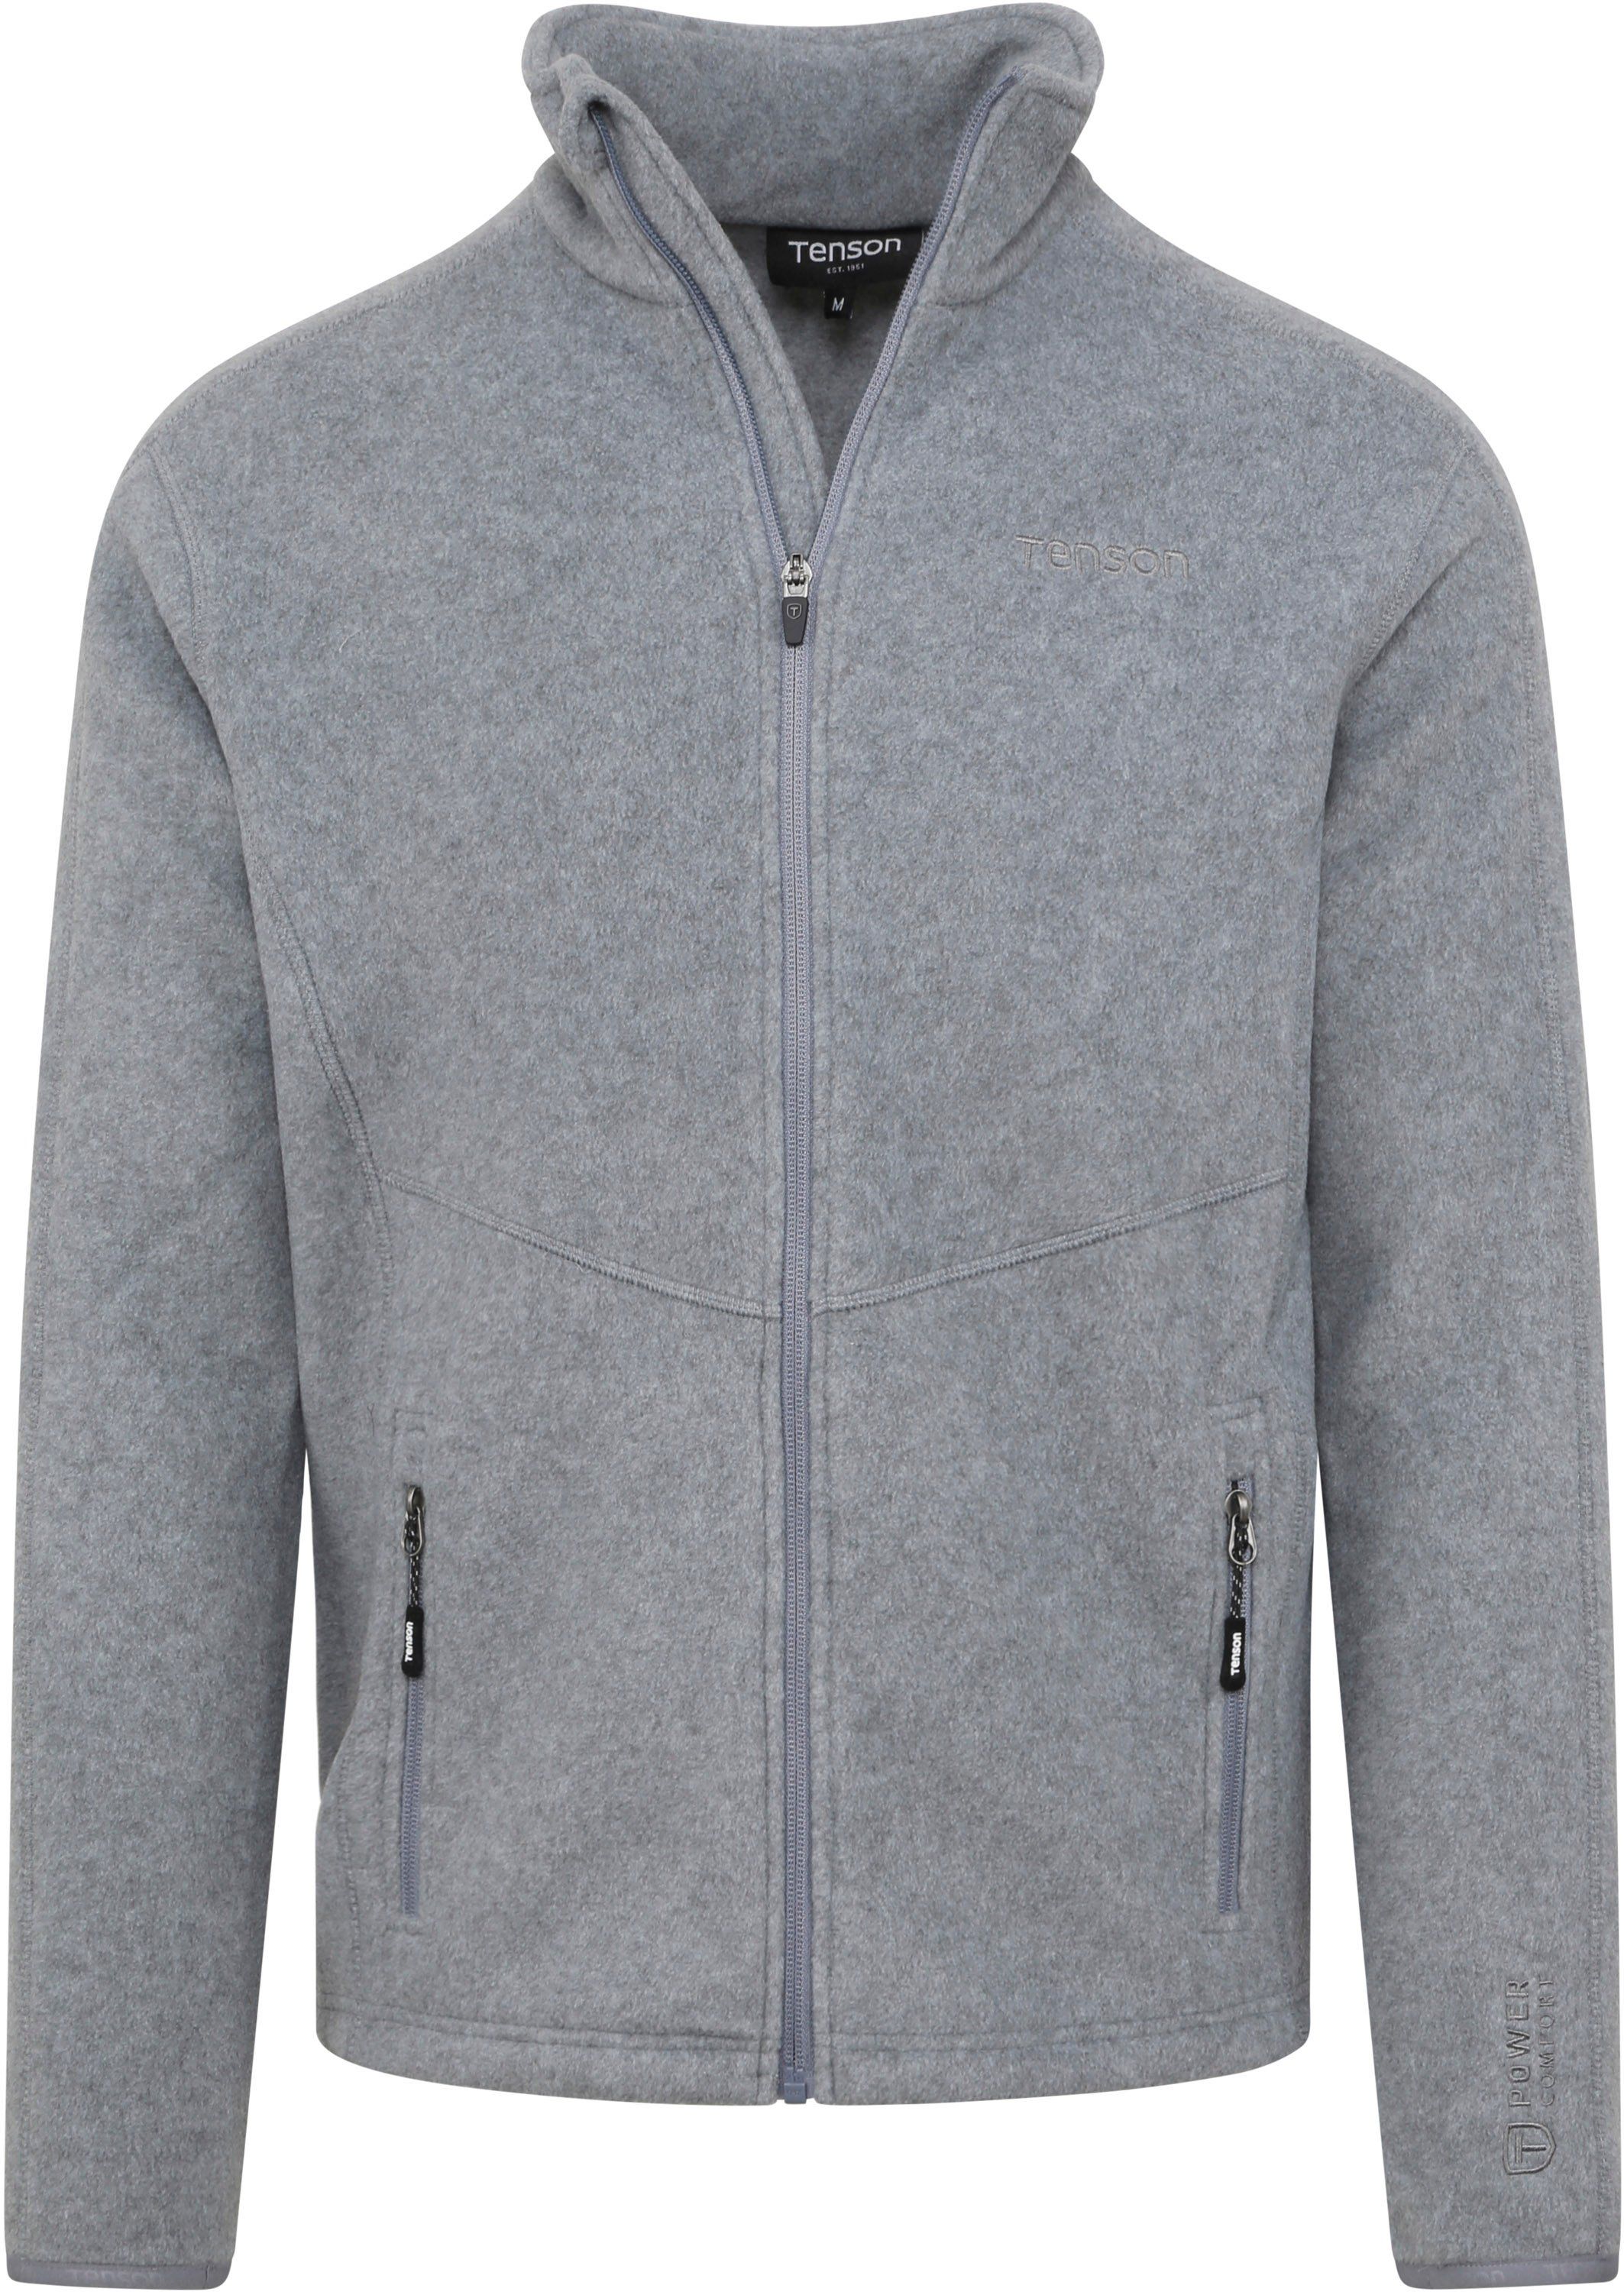 Tenson Miracle Fleece Jacket Grey size M